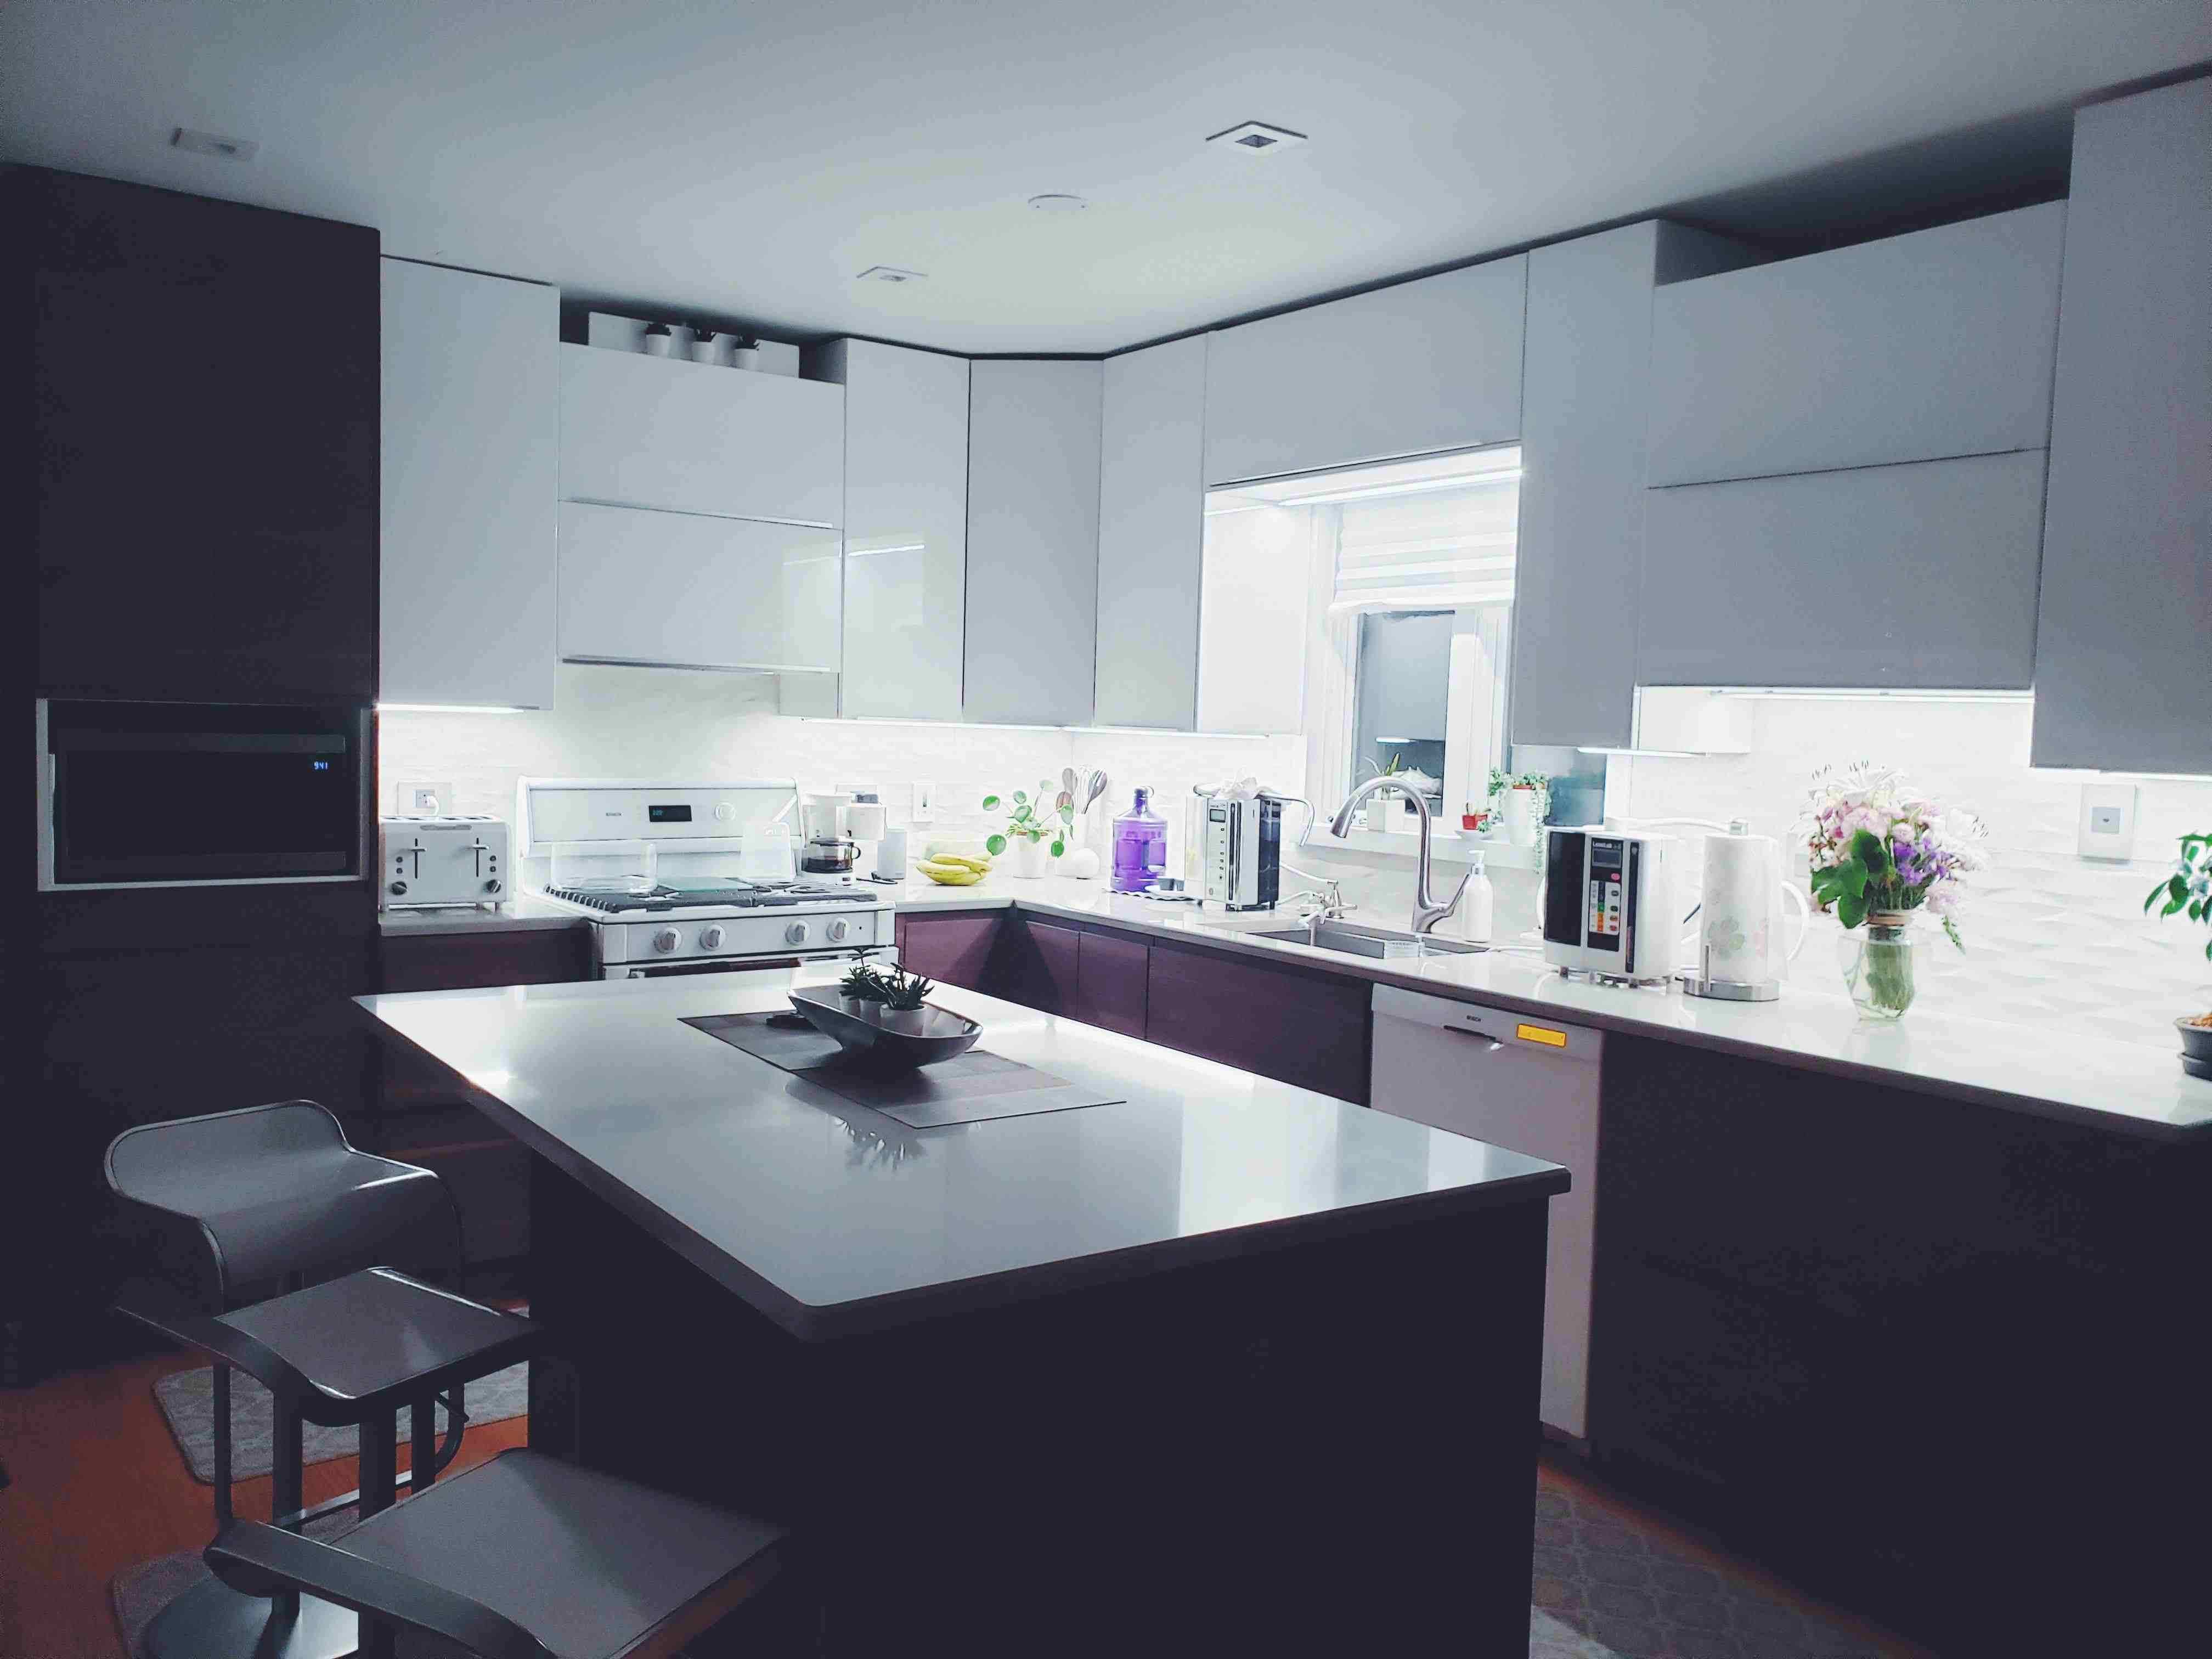 Best Online Store For Home Kitchen Appliances Home Appliances Plus